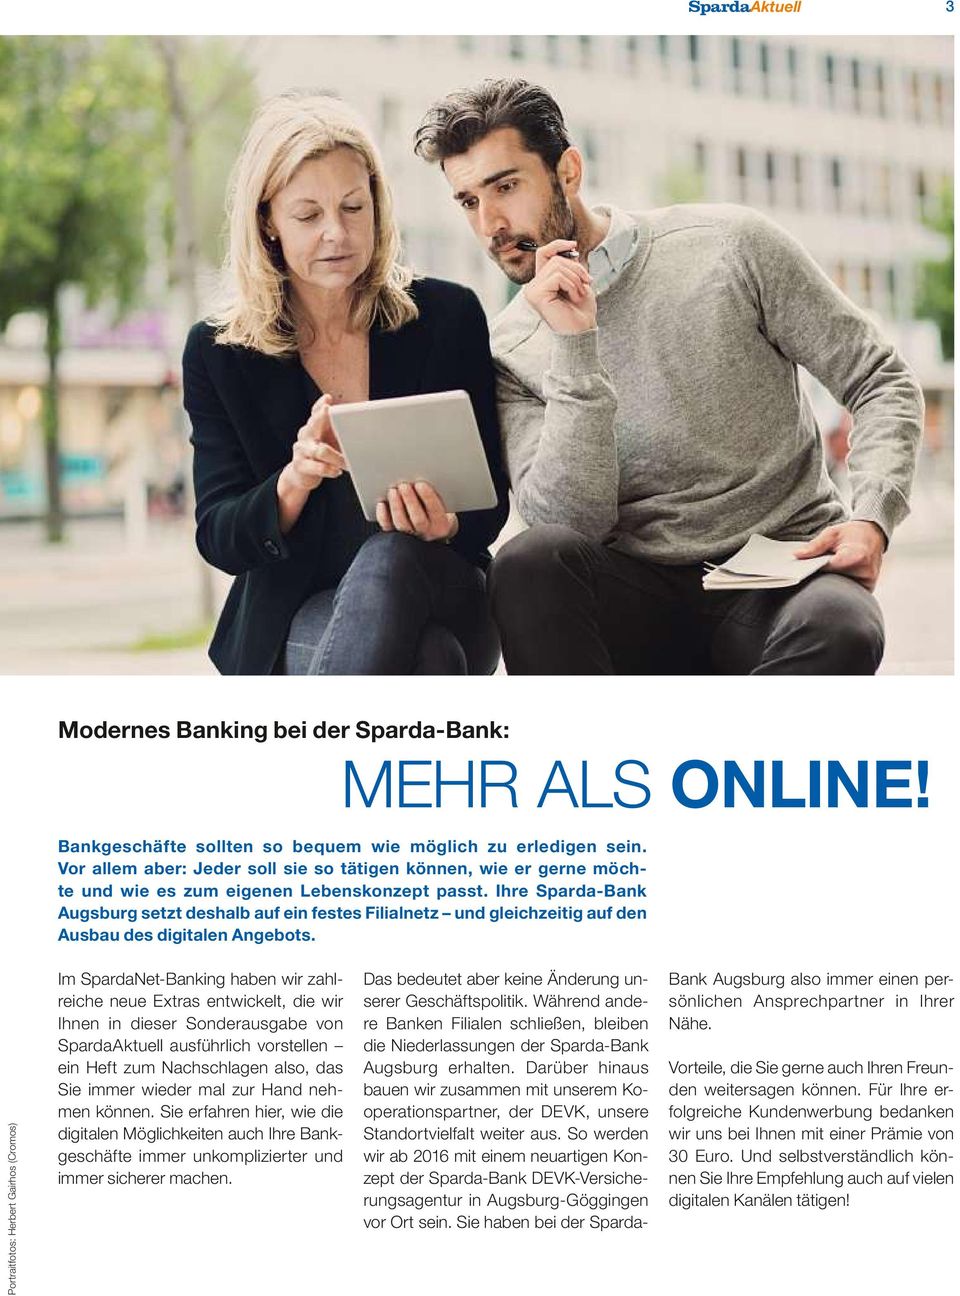 ihre Sparda-Bank Augsburg setzt deshalb auf ein festes Filialnetz und gleichzeitig auf den Ausbau des digitalen Angebots.